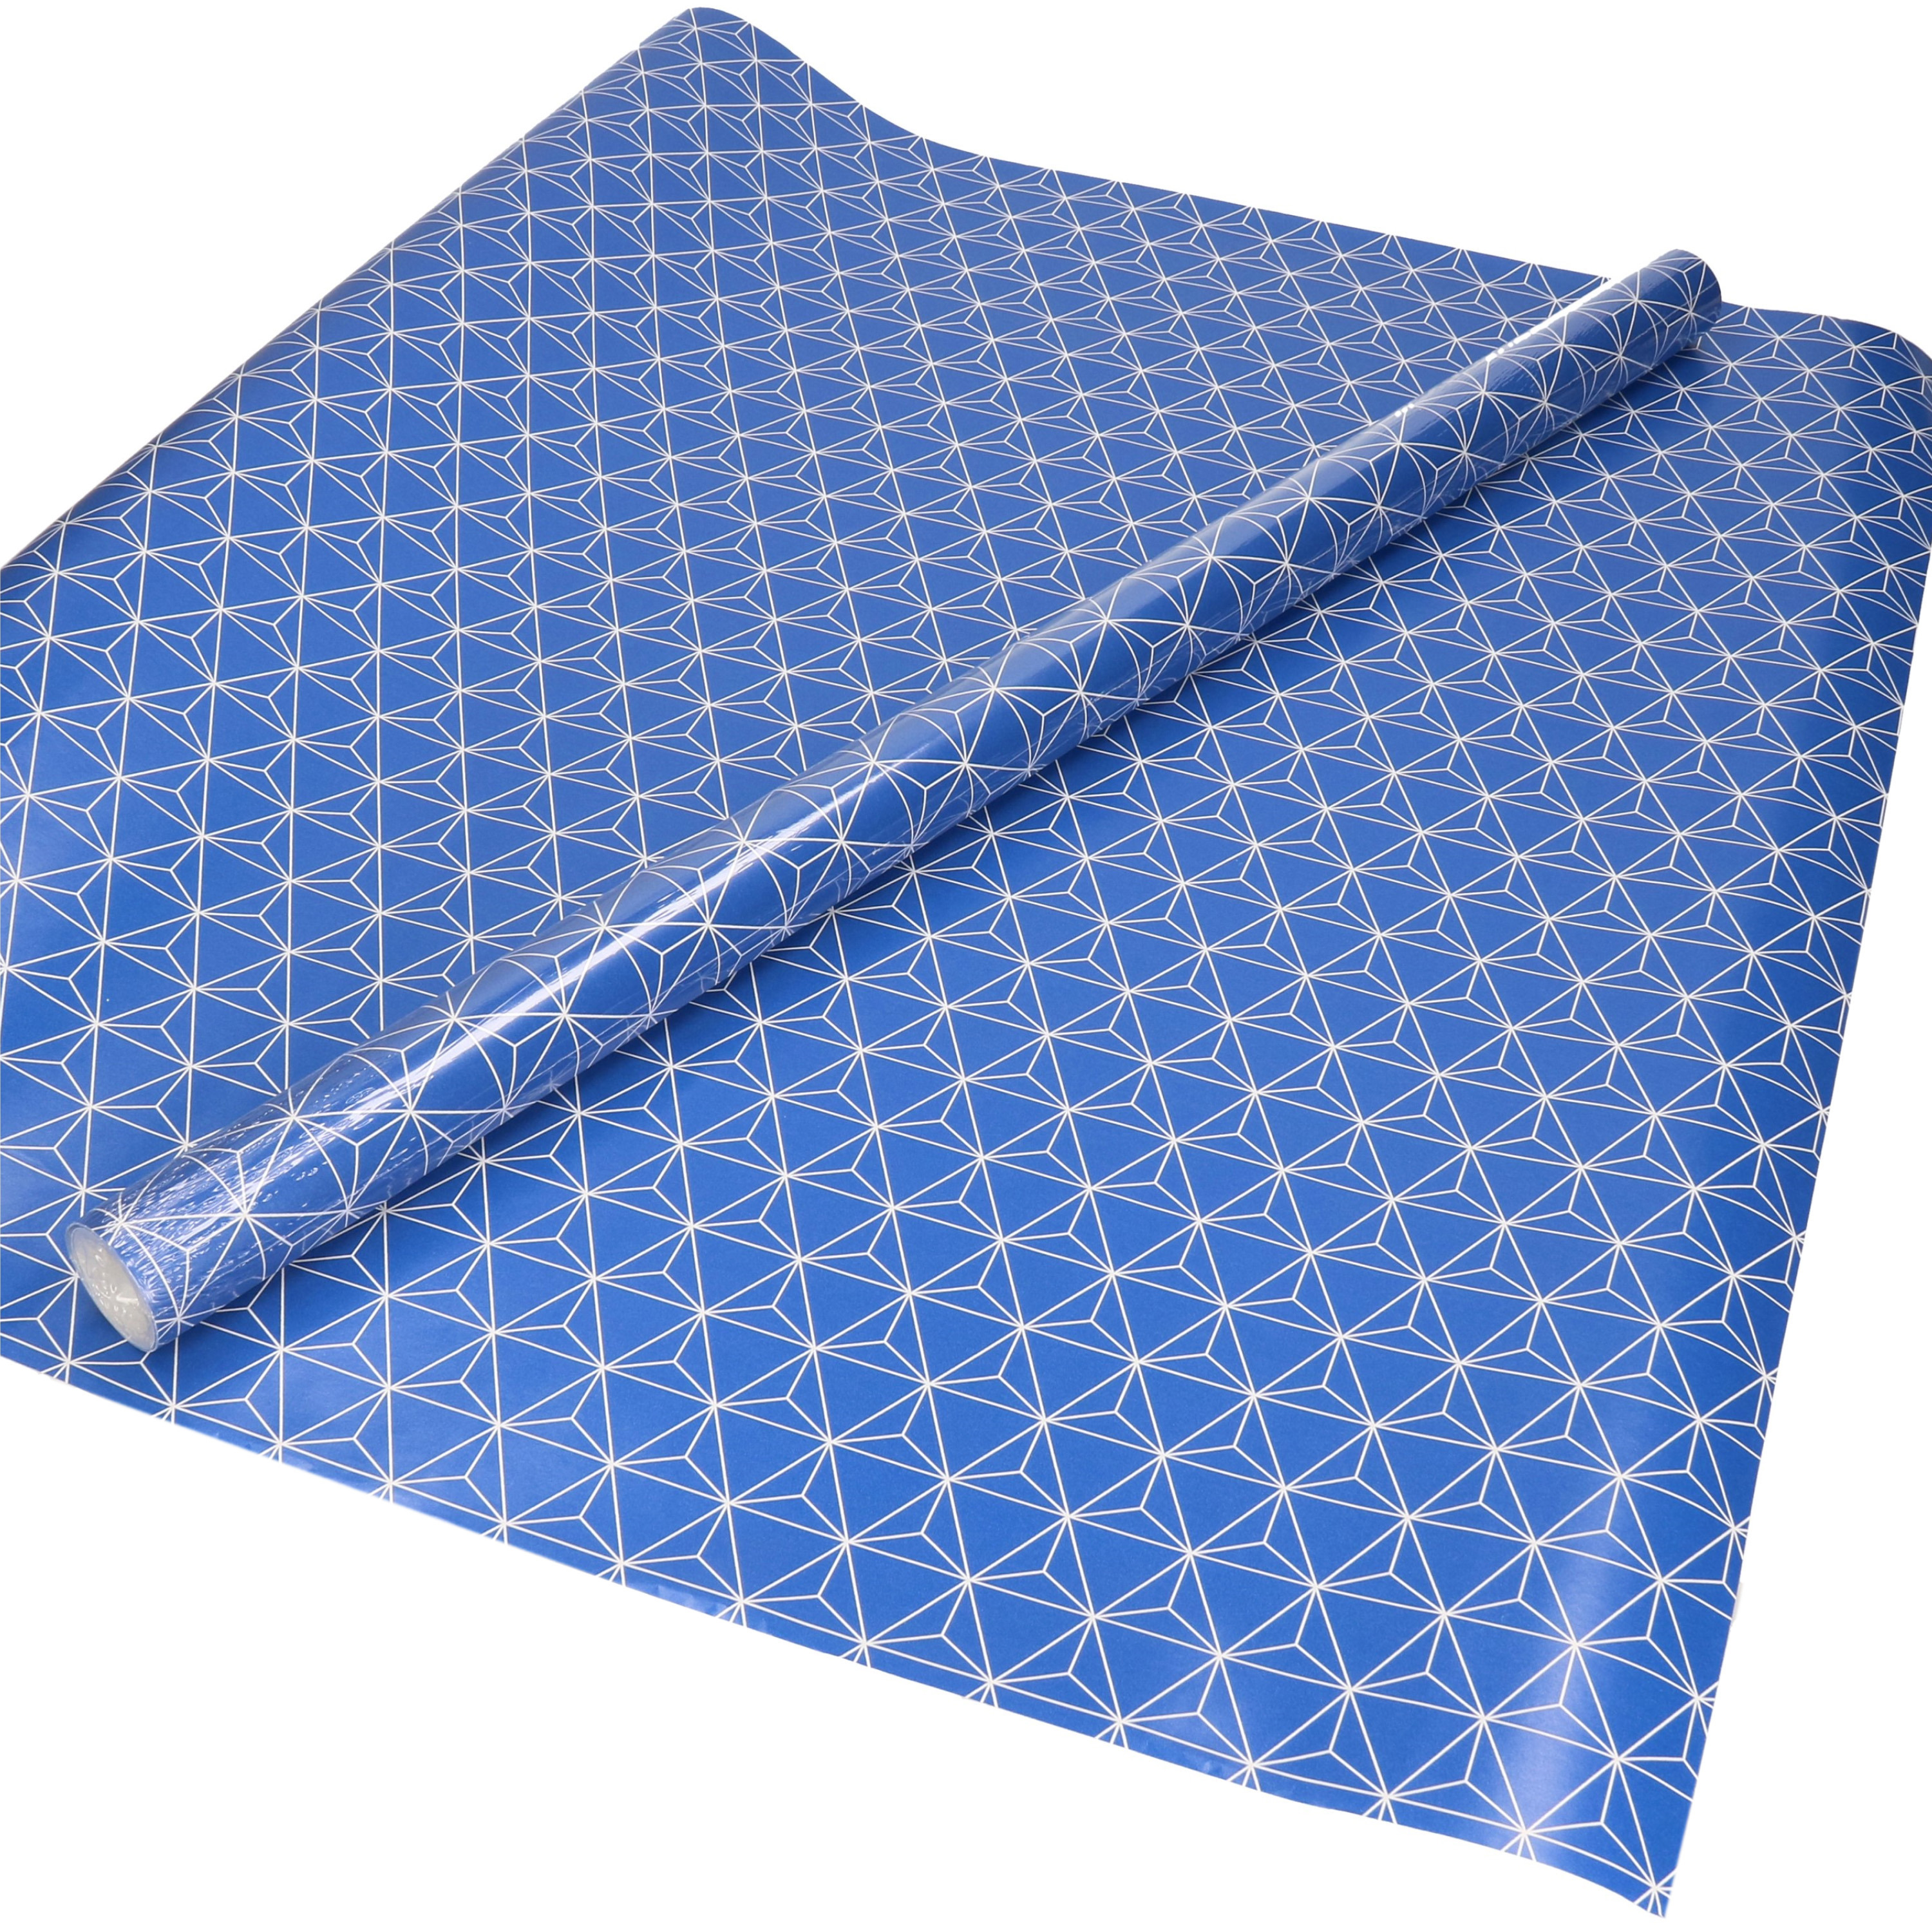 1x Inpakpapier/cadeaupapier blauw met witte figuren - geometrisch motief 200 x 70 cm rol